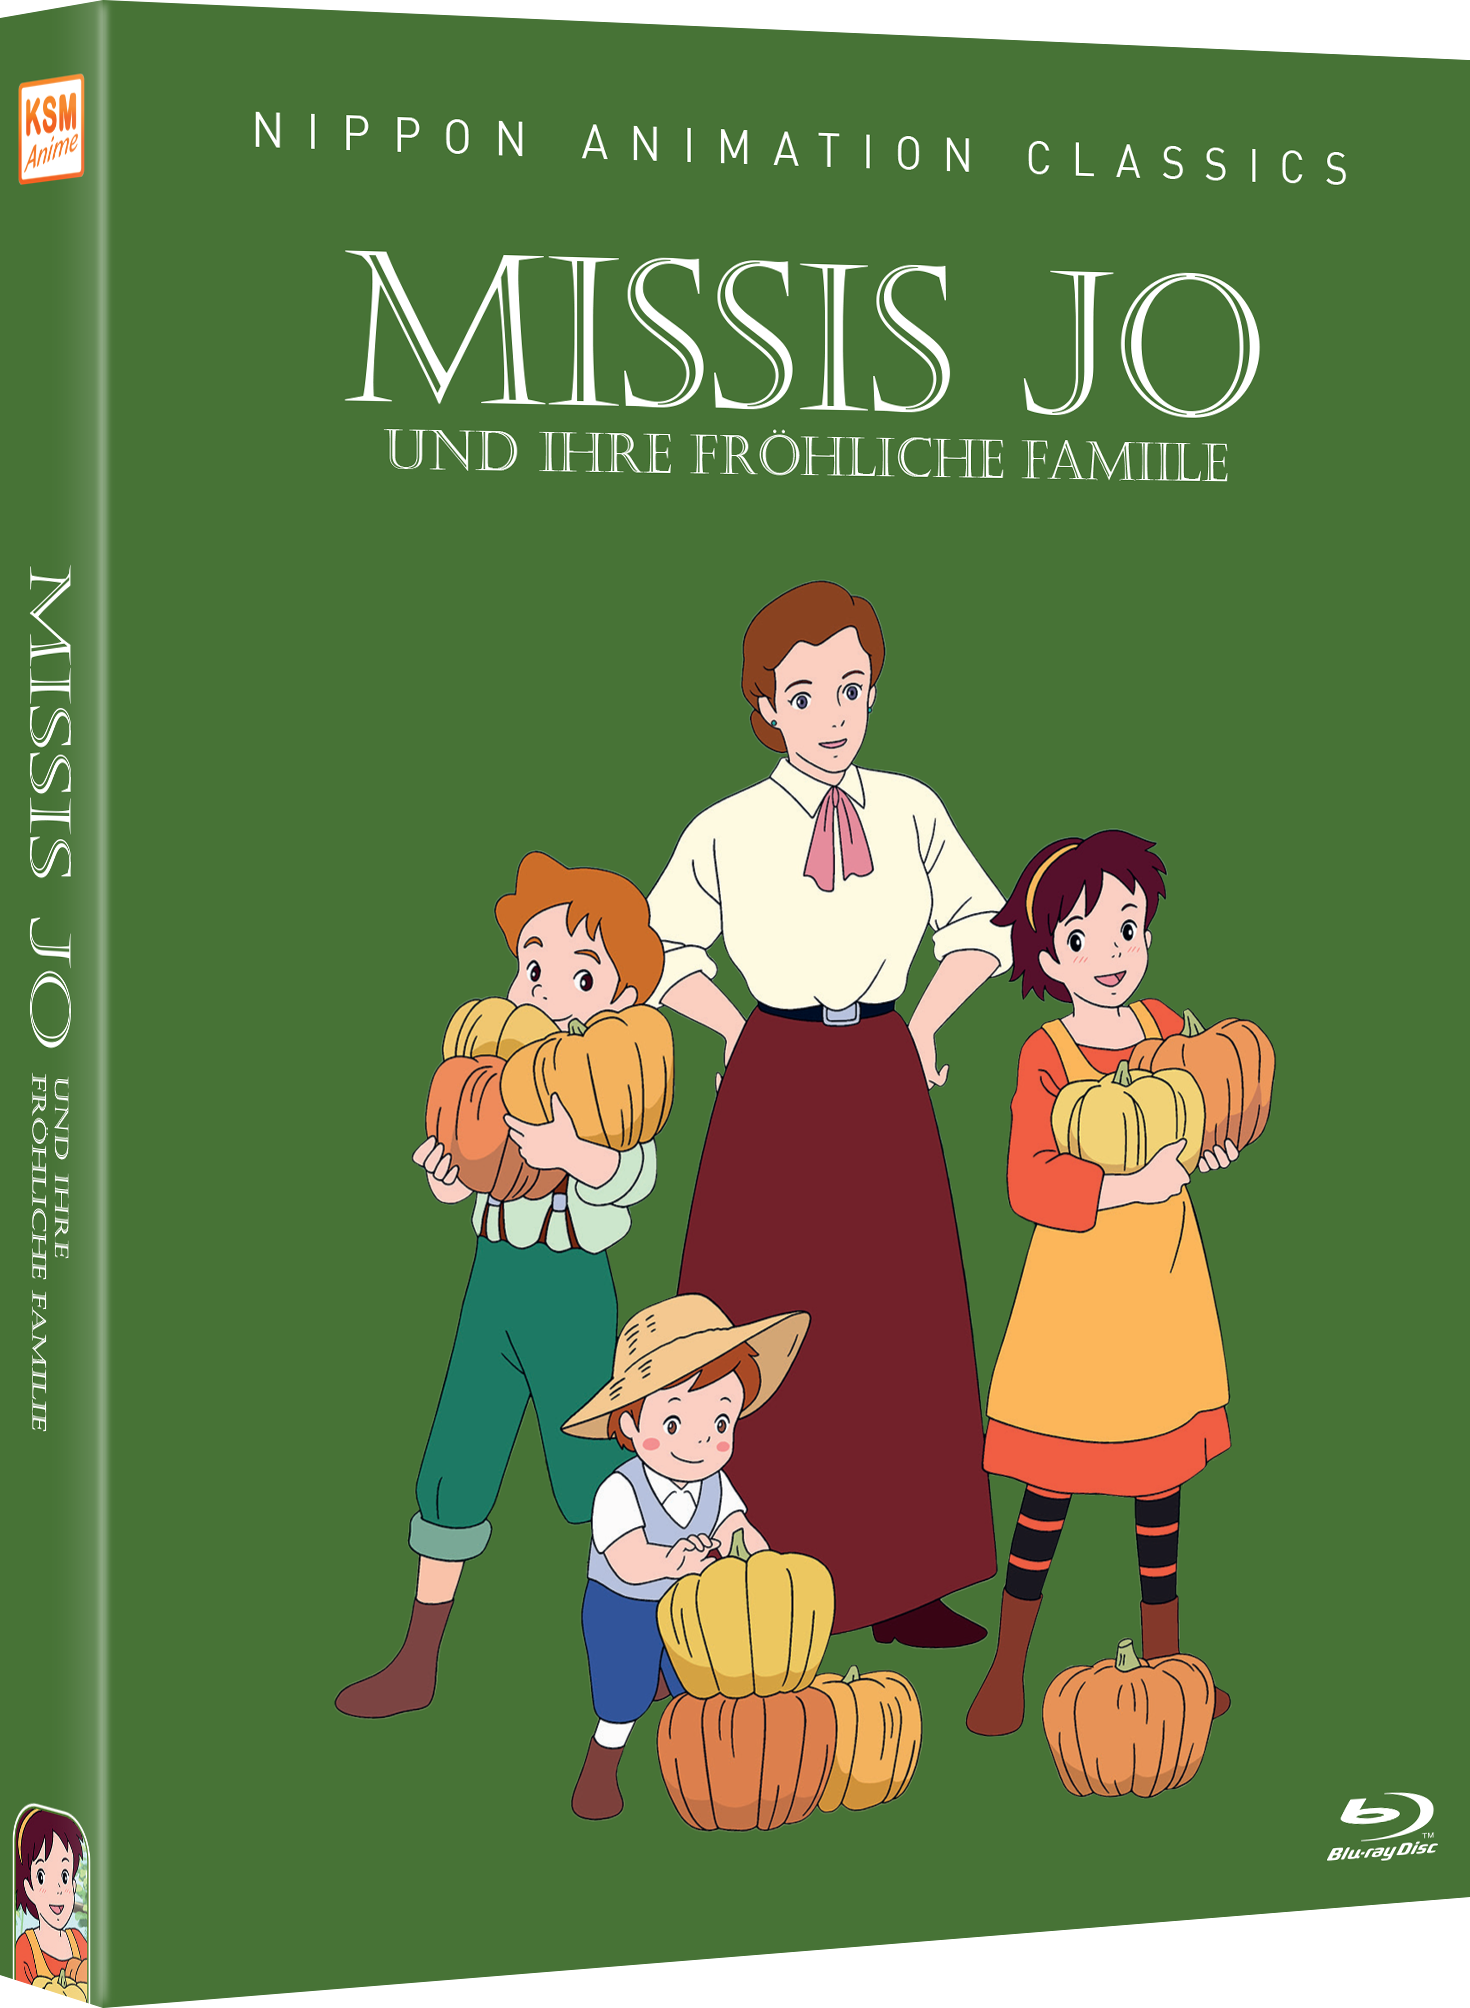 Missis Jo und ihre fröhliche Familie - Complete Edition [Blu-ray] Image 3